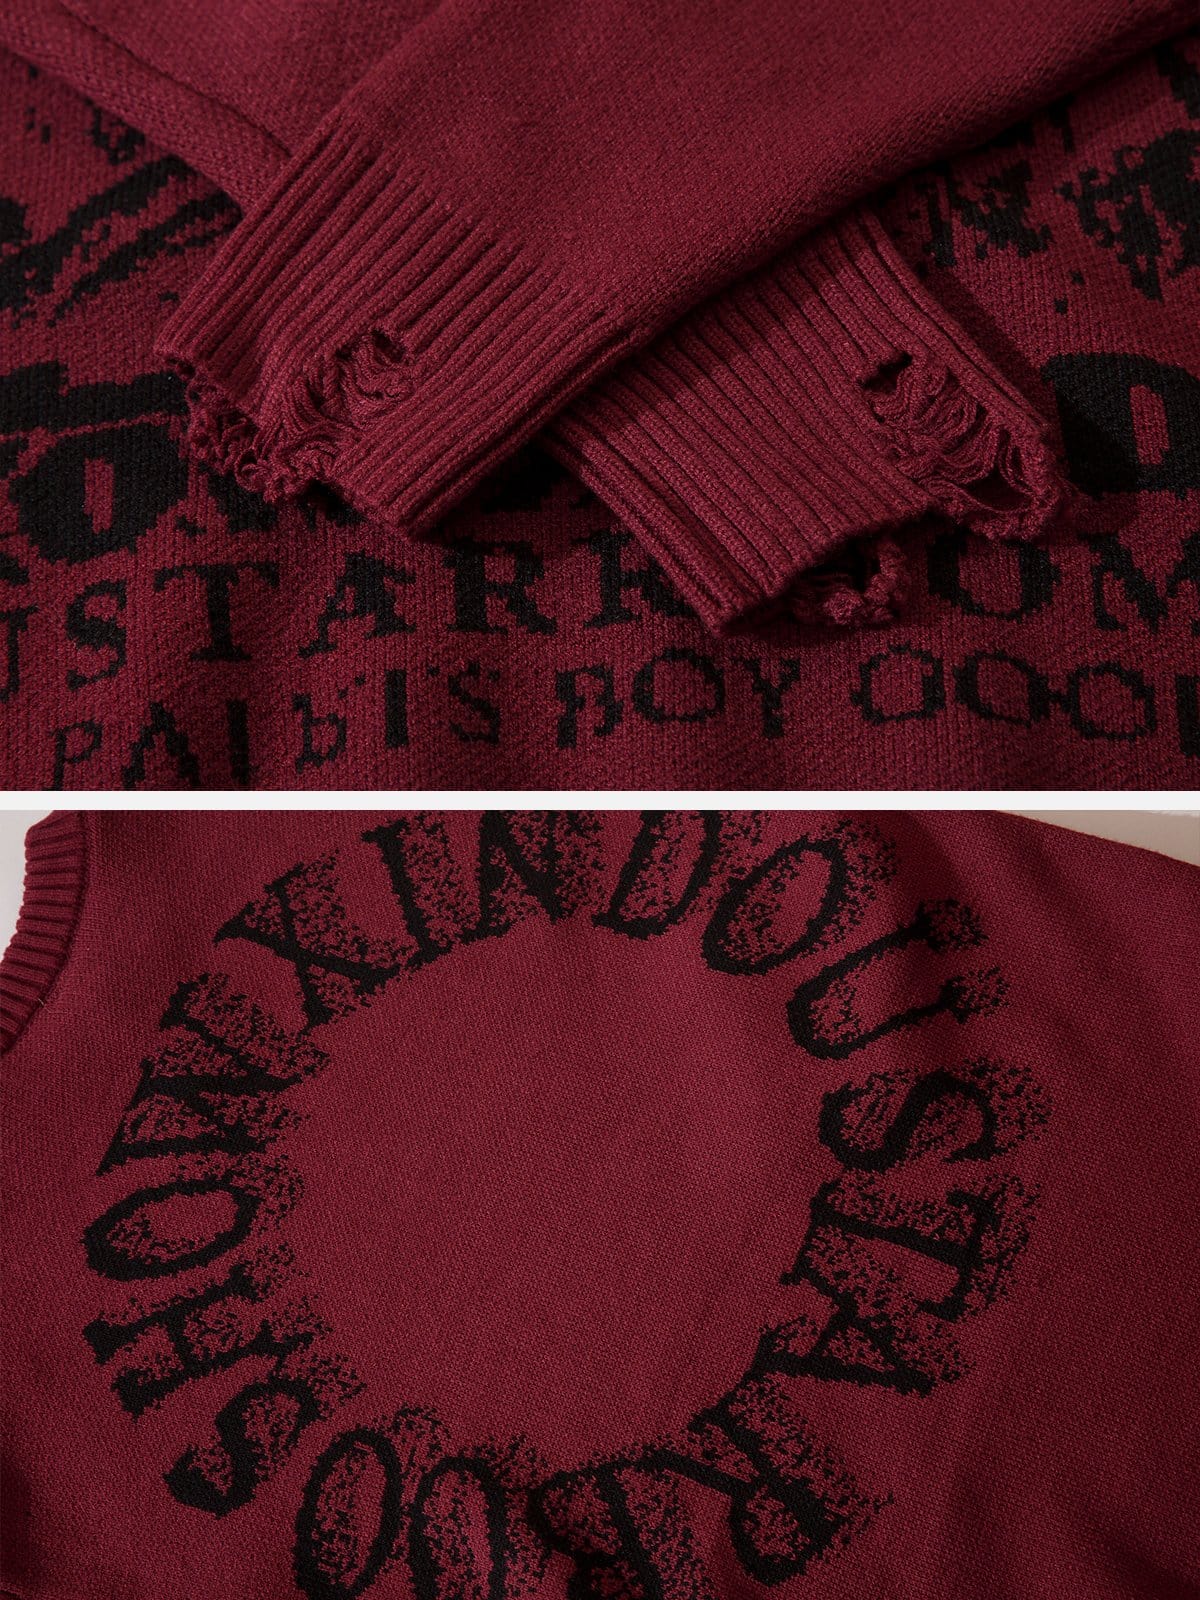 NEV Vintage Pattern Sweater